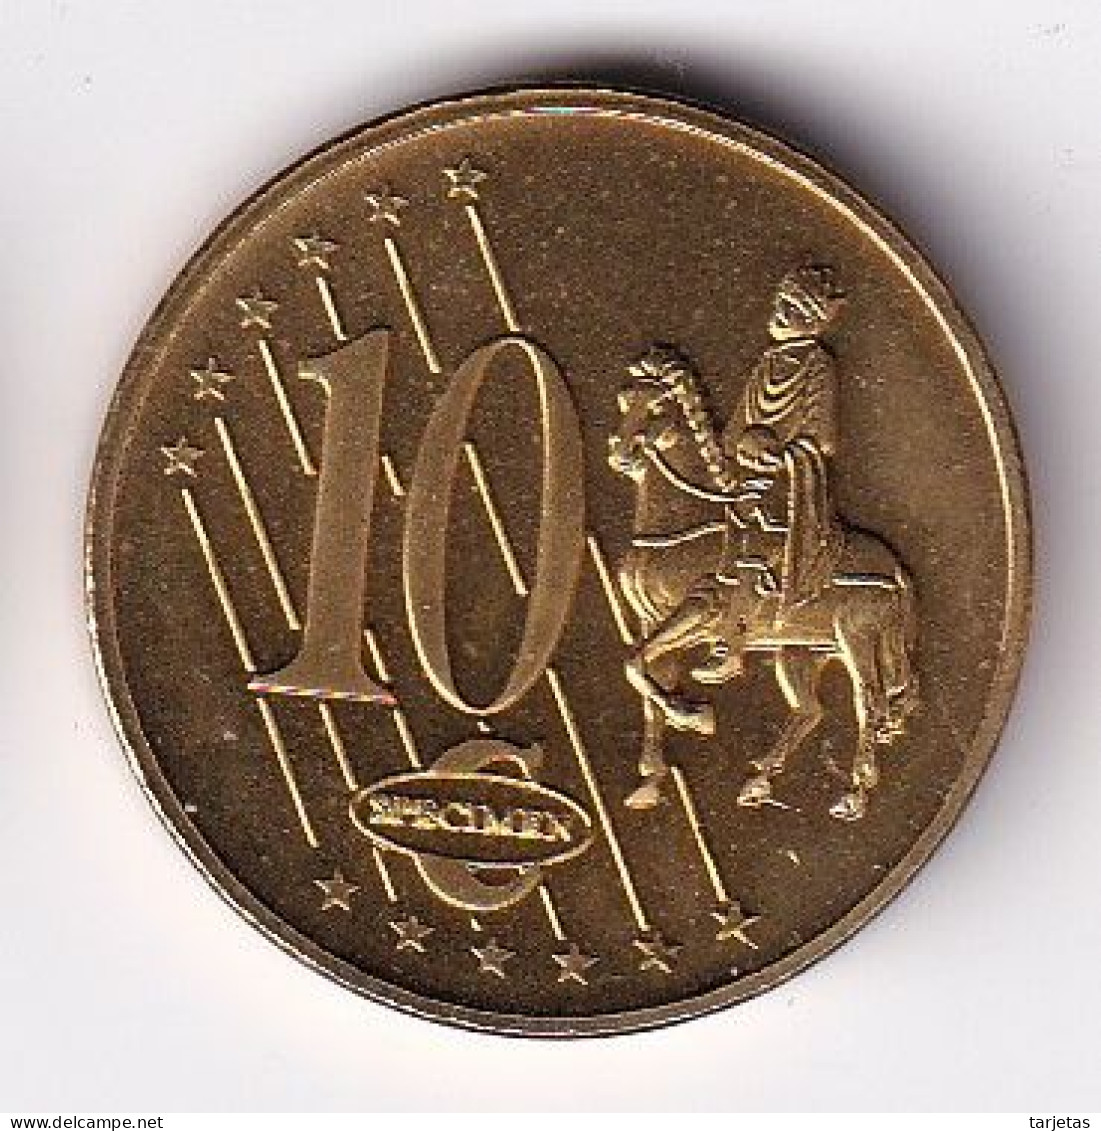 MONEDA DE PRUEBA DE SERBIA DE 10 CENTIMOS DE EURO DEL AÑO 2004 (COIN) - Serbia